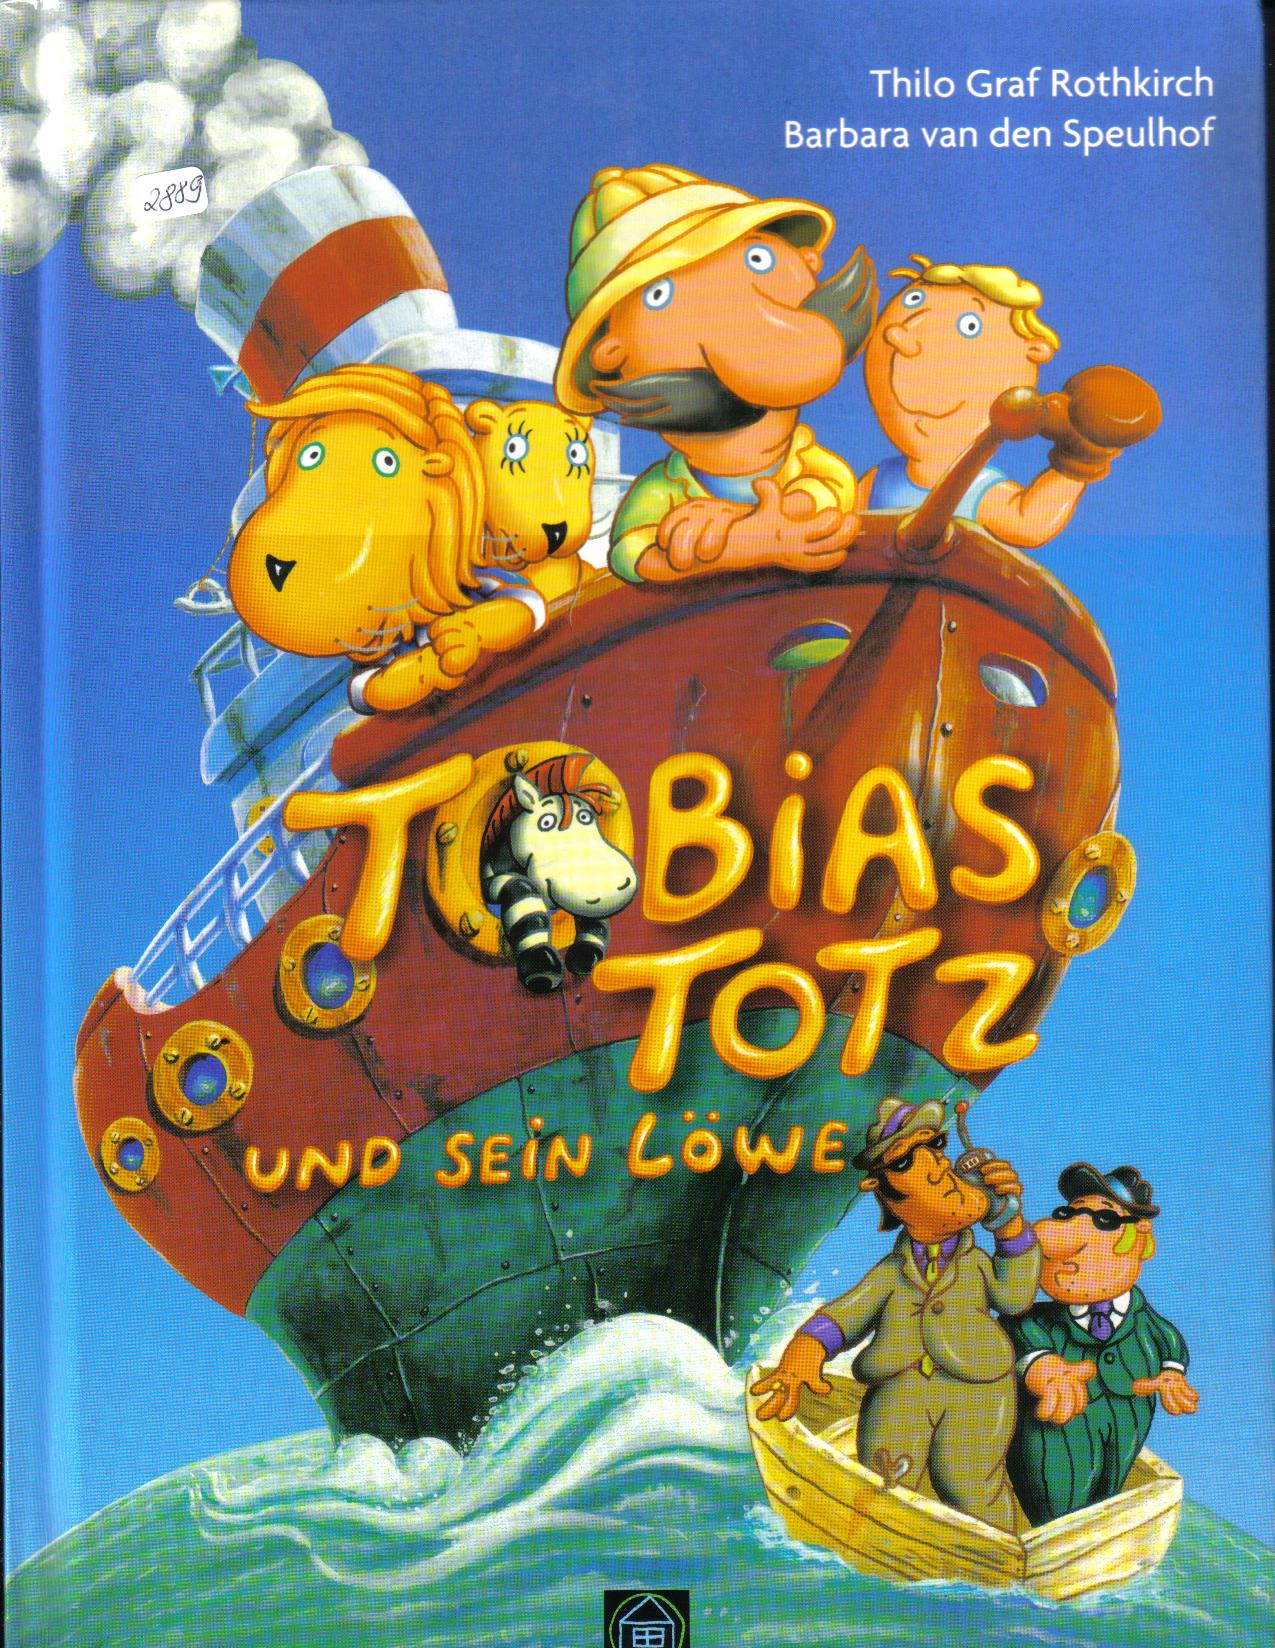 Tobias Totz und sein Loewe Thilo Graf Rothkilch / Barbara van den Speulhof